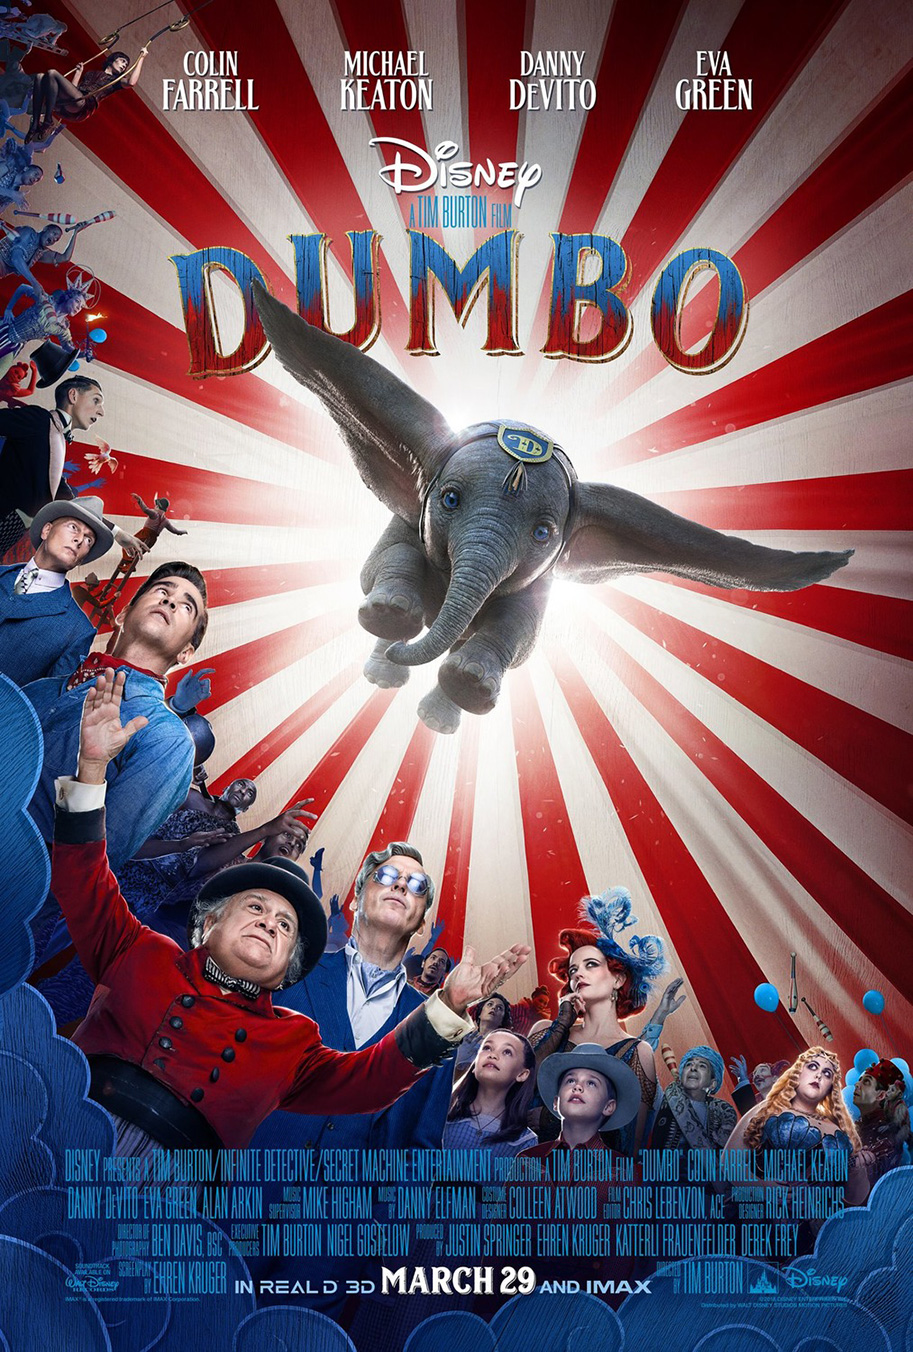 Dumbo poster (Disney)